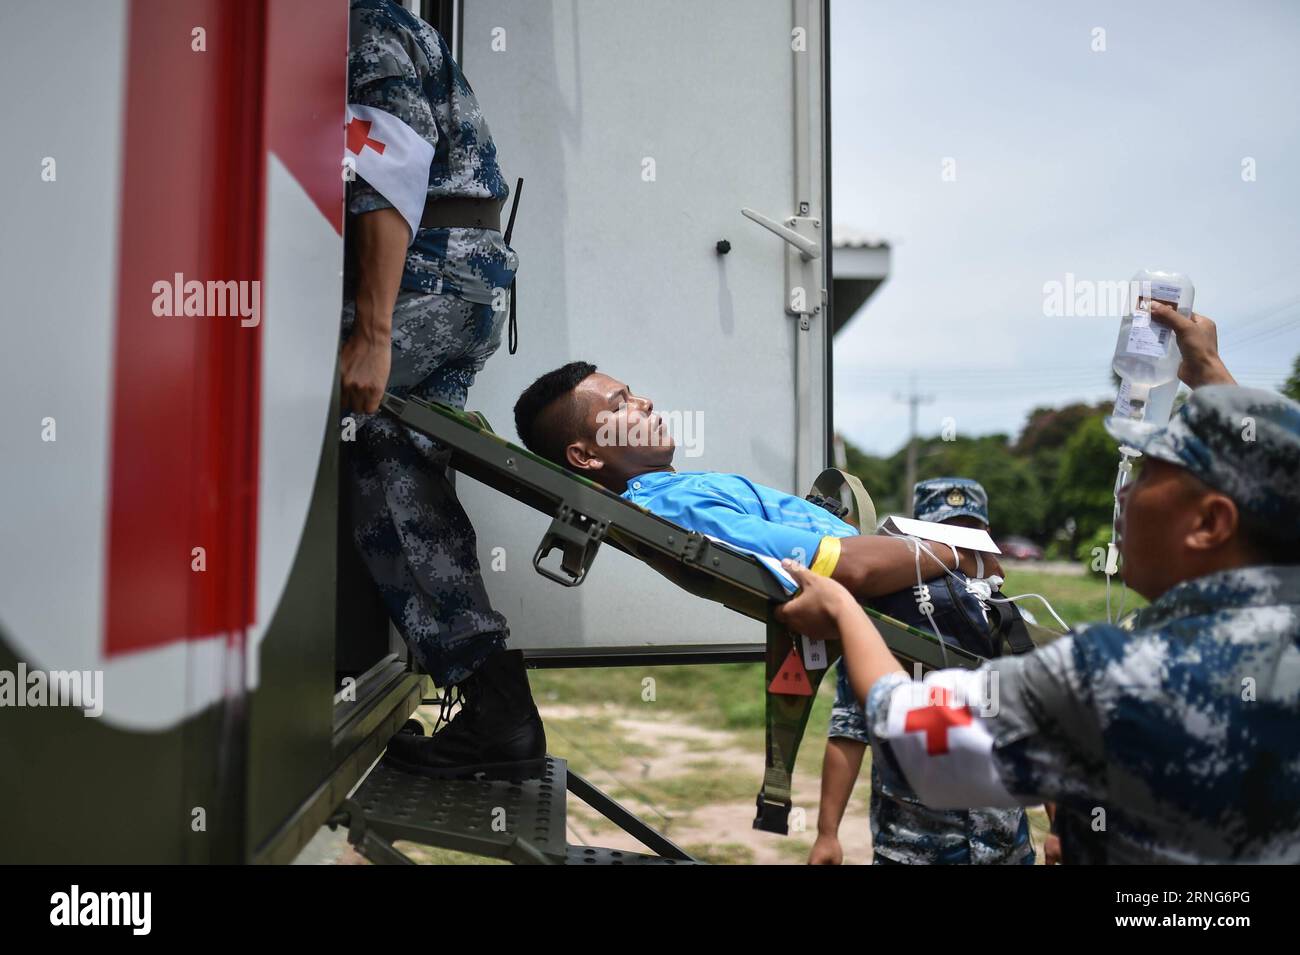 CHONBURI, 8 settembre 2016 -- soldati cinesi trasferiscono i feriti durante l'ASEAN Defense Ministers Meeting-Plus Military Medicine-Humanitarian Assistance and Disaster Relief Joint Exercise (AM-HEX 2016) a Chonburi, Thailandia, l'8 settembre 2016. Le truppe di 18 paesi -- 10 stati membri dell'ASEAN e i suoi otto partner di dialogo lunedì hanno iniziato un esercizio congiunto sull'assistenza umanitaria e il soccorso in caso di catastrofi qui in Thailandia. )(axy) THAILAND-CHONBURI-AM-HEX 2016-JOINT EXERCISE LixMangmang PUBLICATIONxNOTxINxCHN Chonburi 8 settembre 2016 soldati cinesi trasferiscono i feriti durante il mi di difesa ASEAN Foto Stock